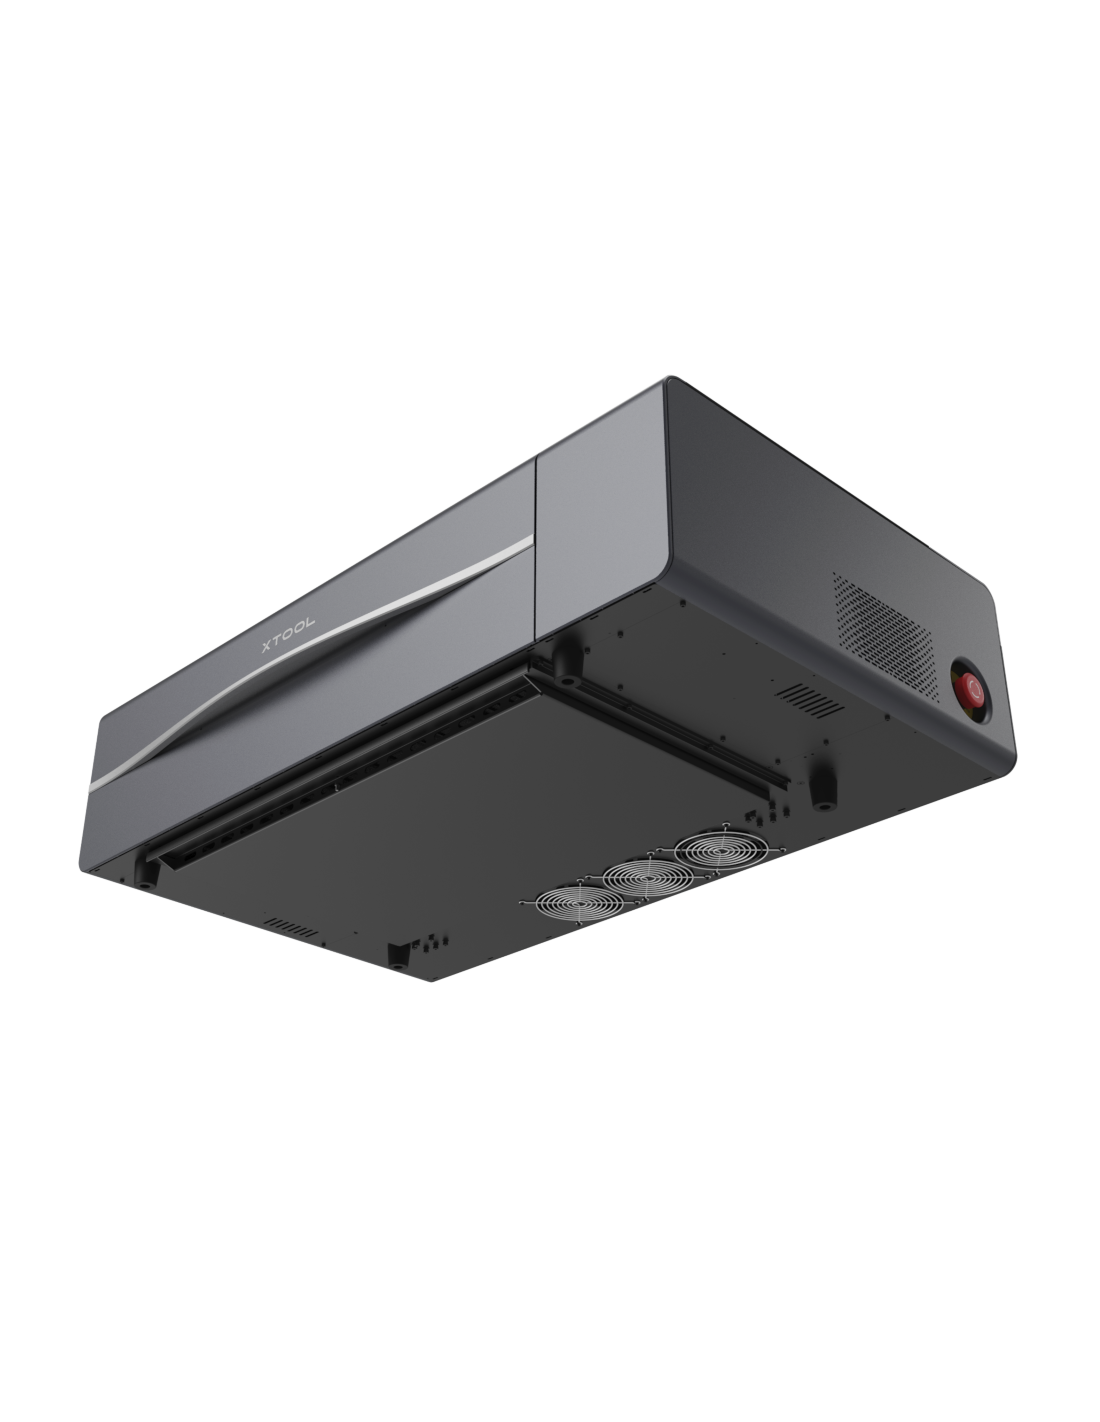 xTool P2 55W - Cortadora láser de escritorio de CO2